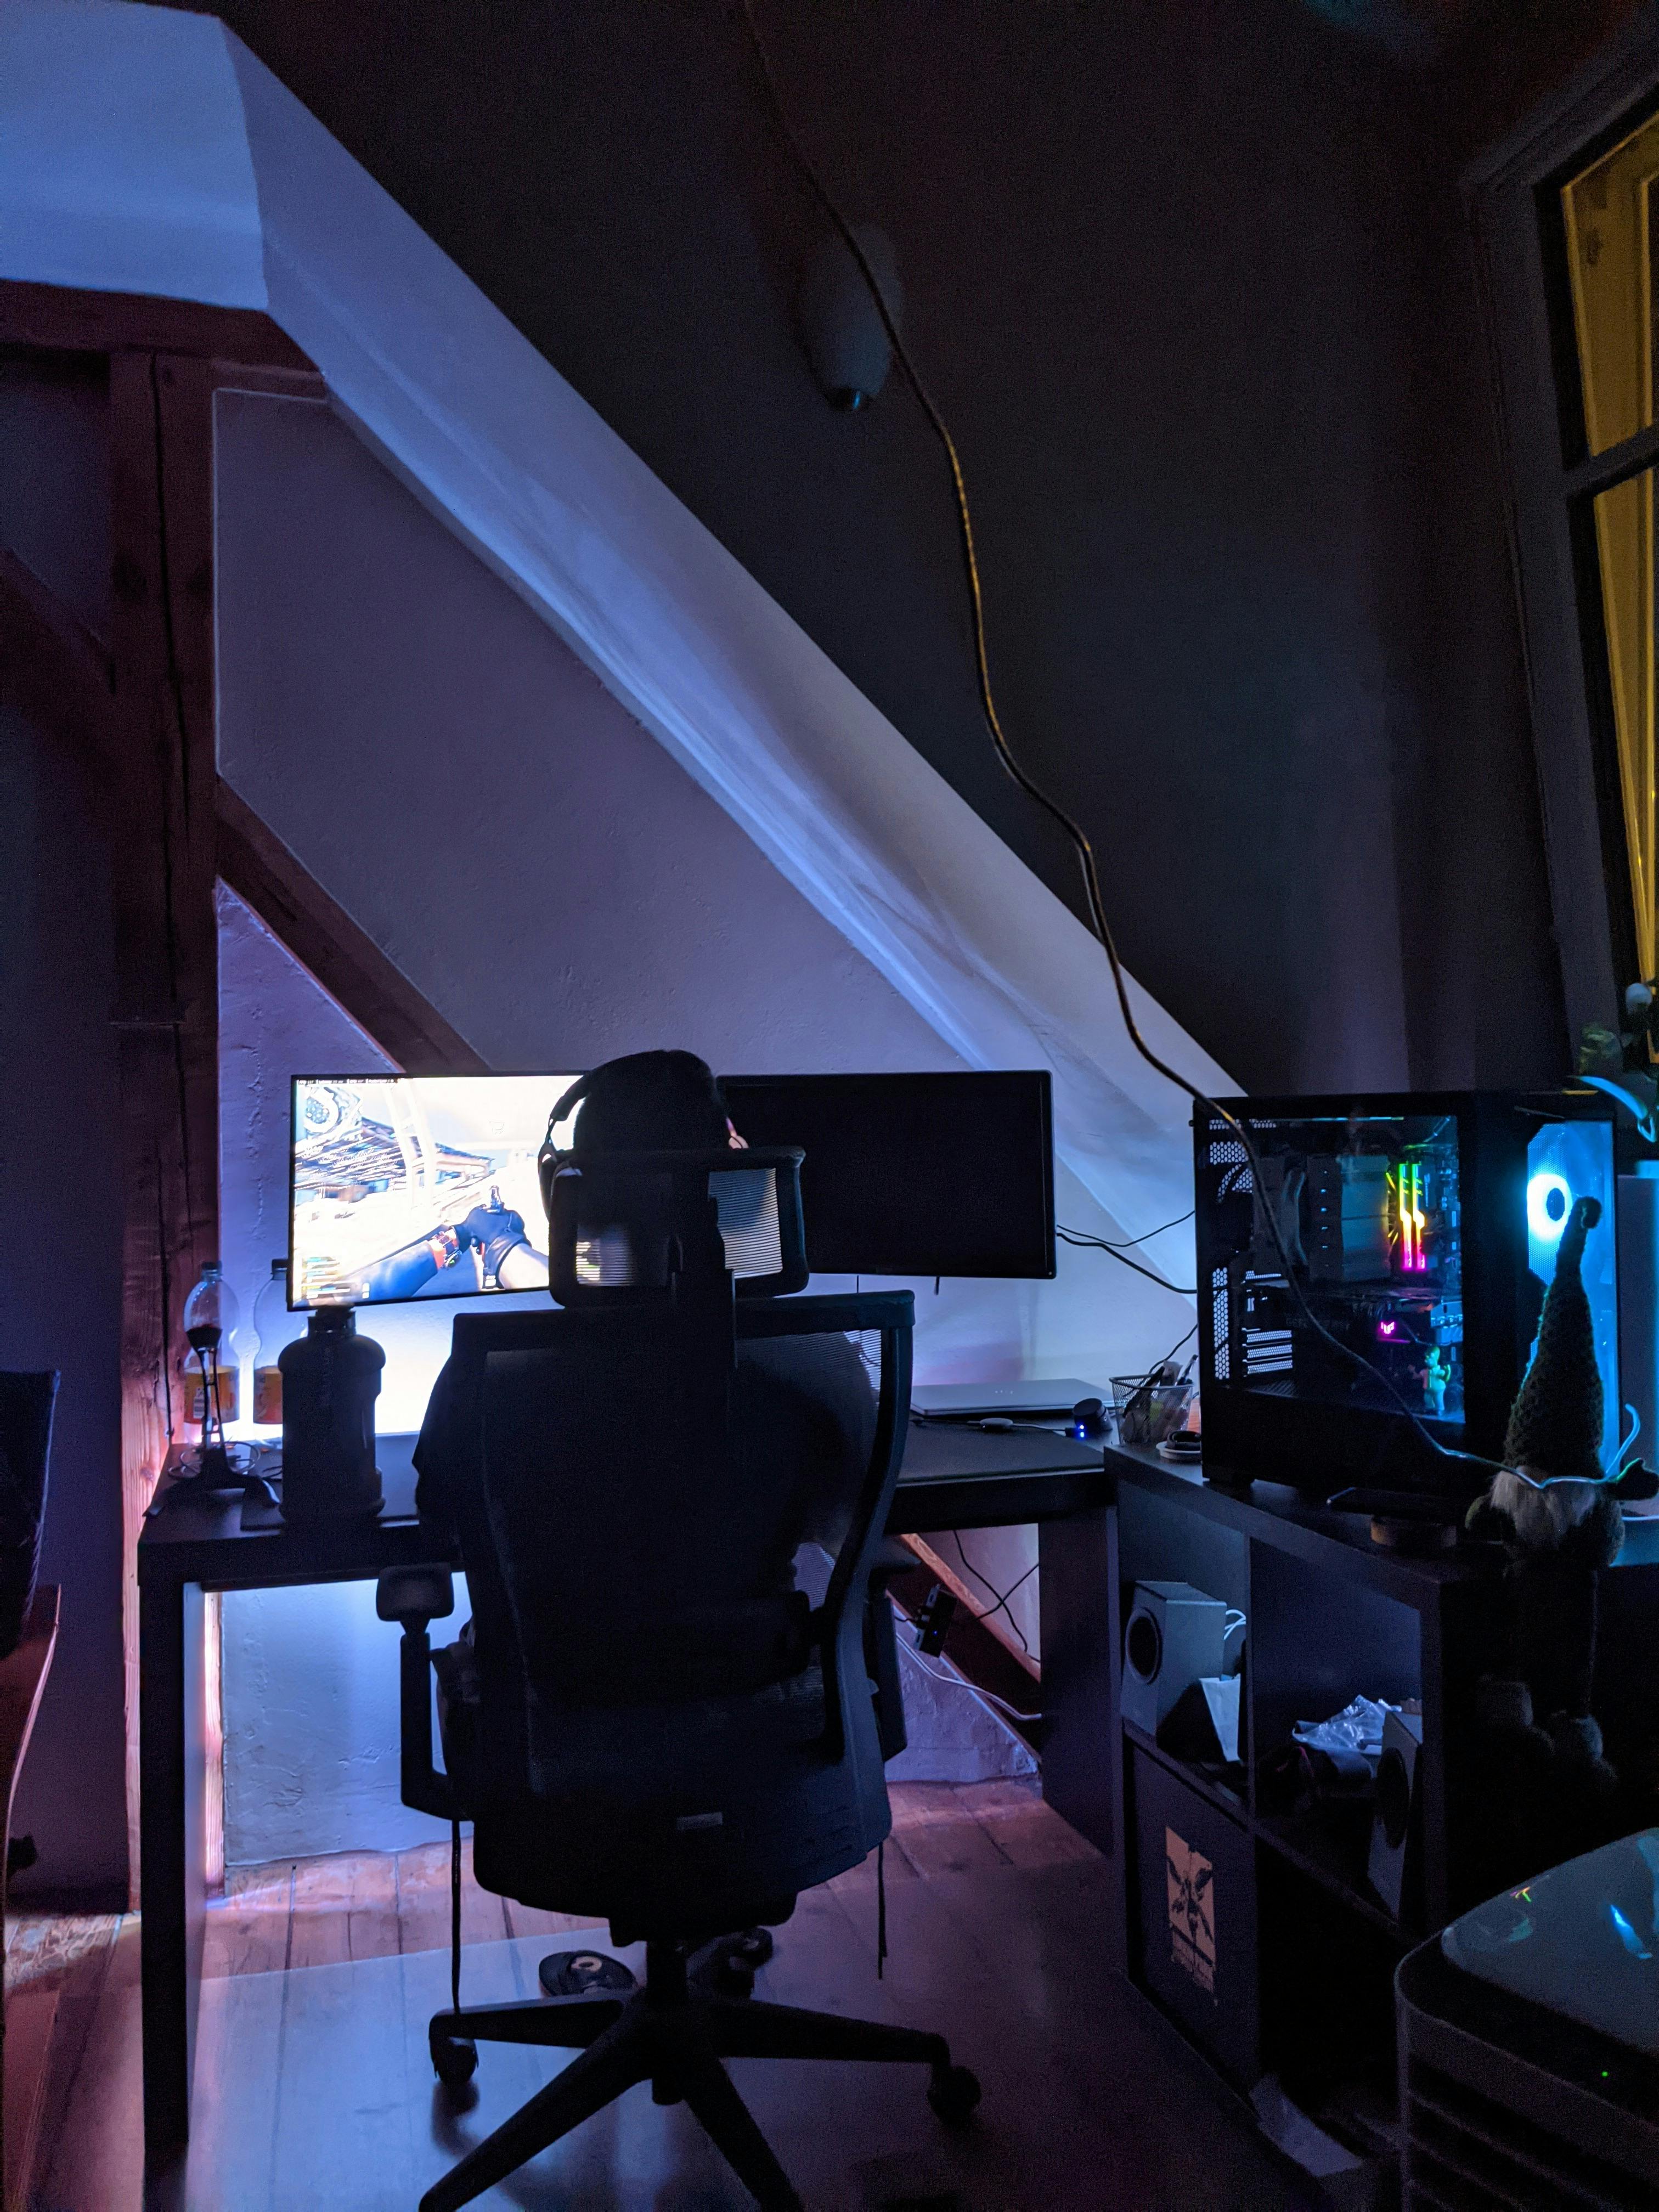 Une personne jouant à un jeu vidéo dans une salle de jeux | Source : Pexels